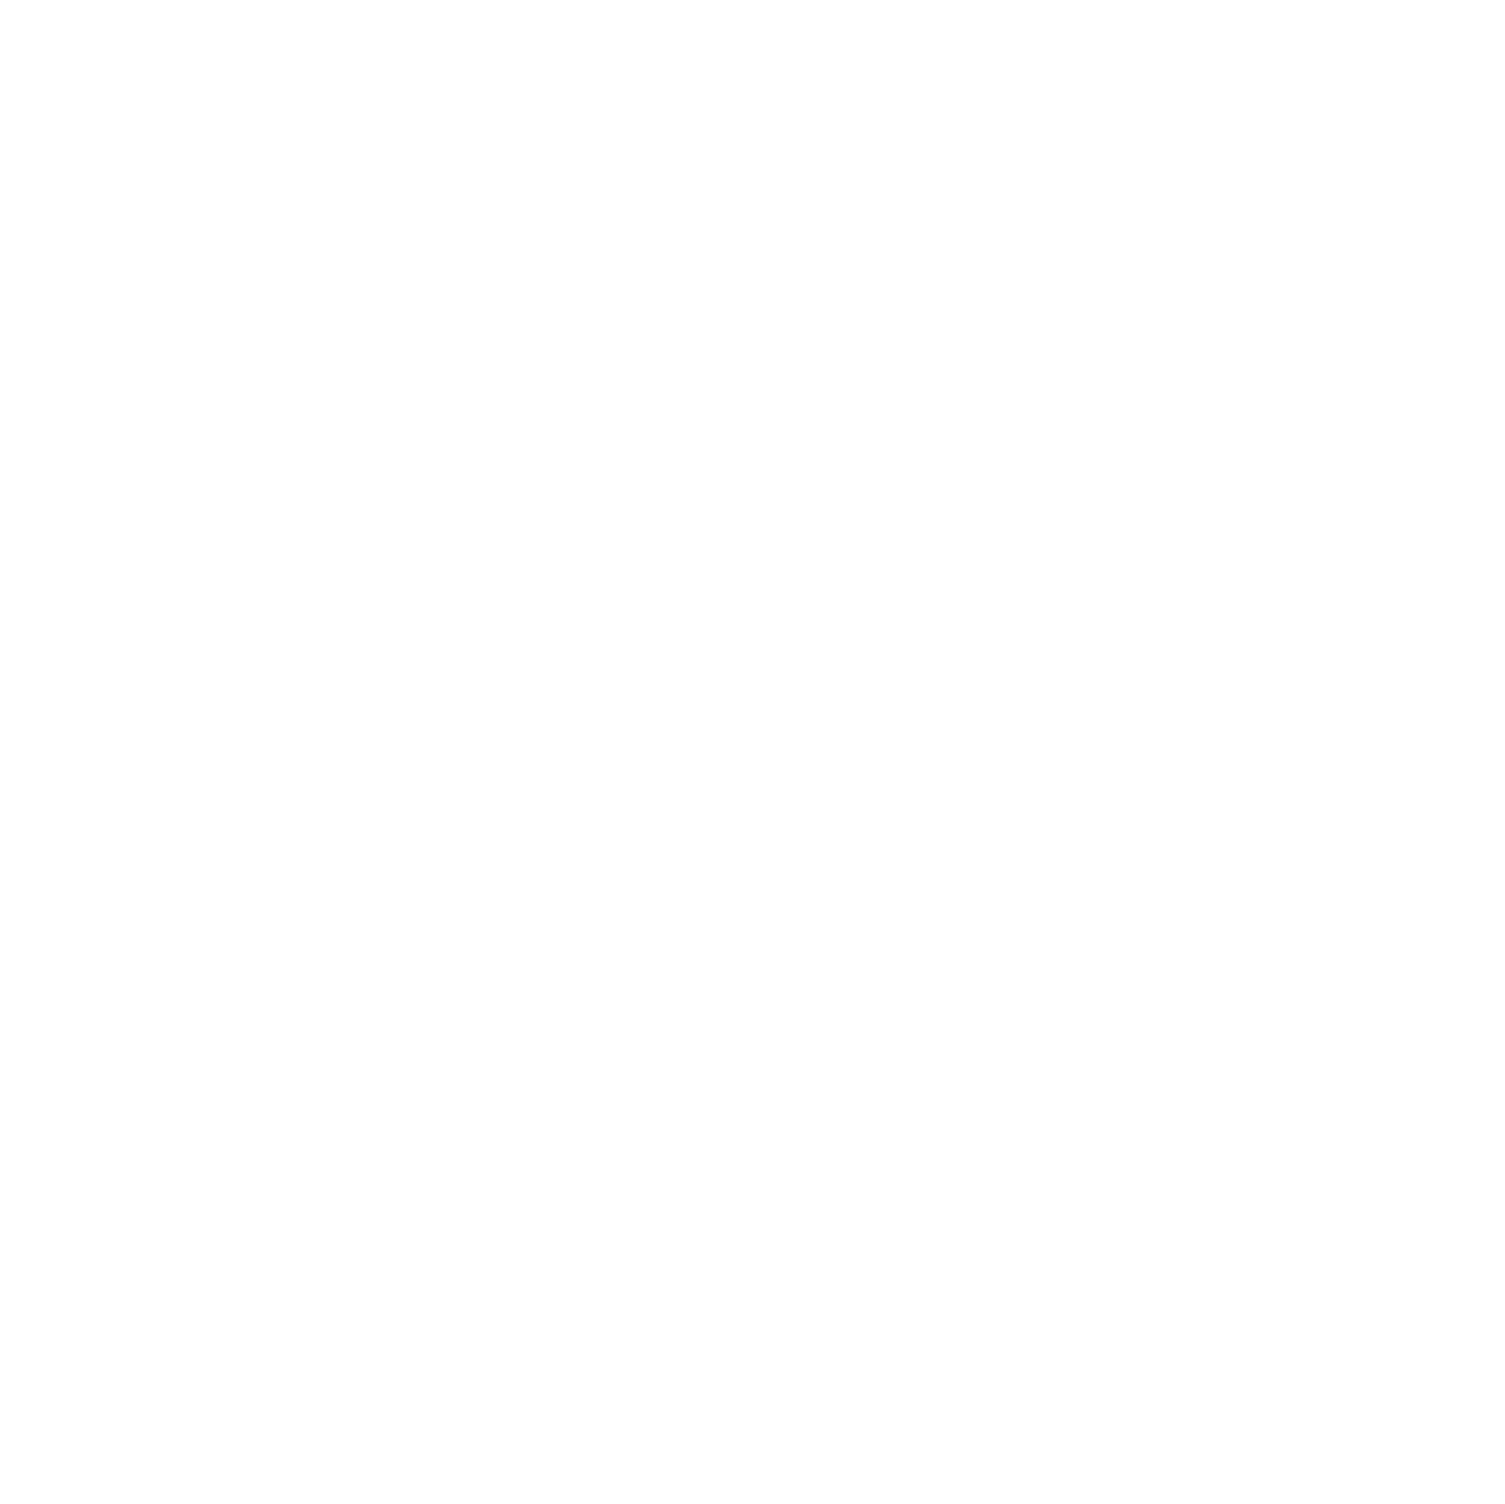 NETGEAR logo for dark backgrounds (transparent PNG)